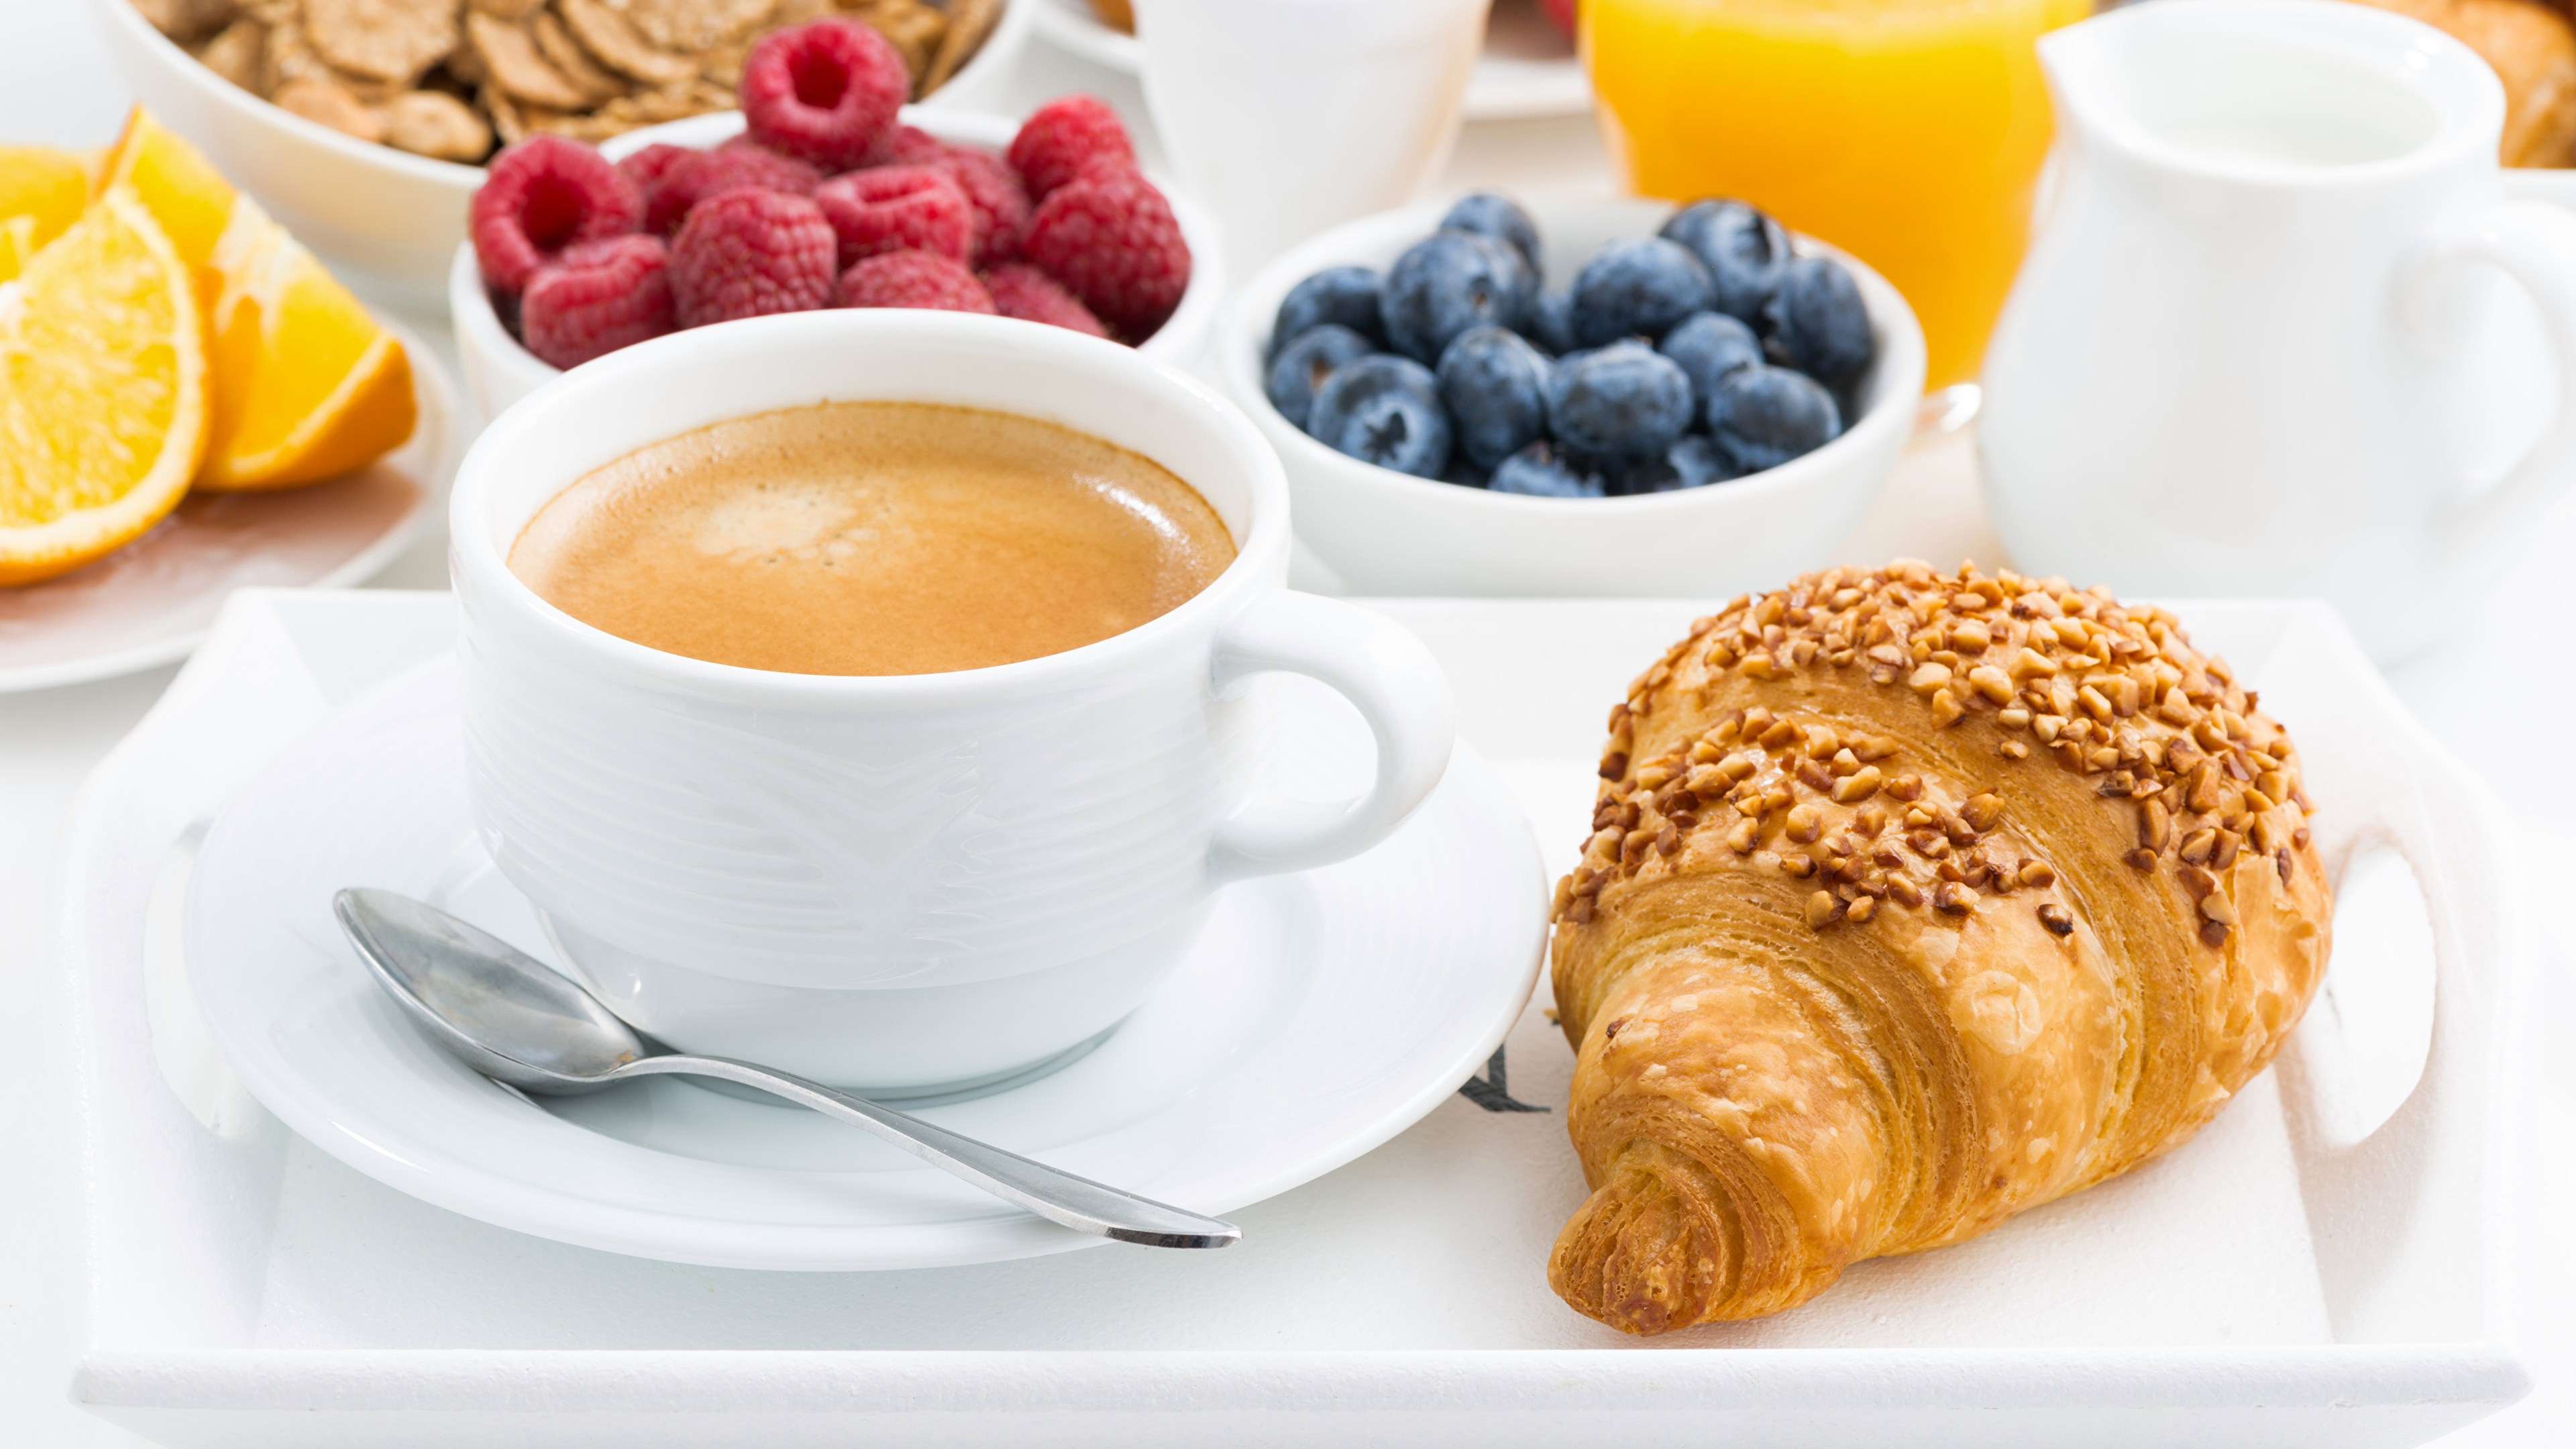 https://s1.1zoom.ru/b4852/823/Coffee_Croissant_Berry_Breakfast_Cup_Spoon_535490_3840x2160.jpg